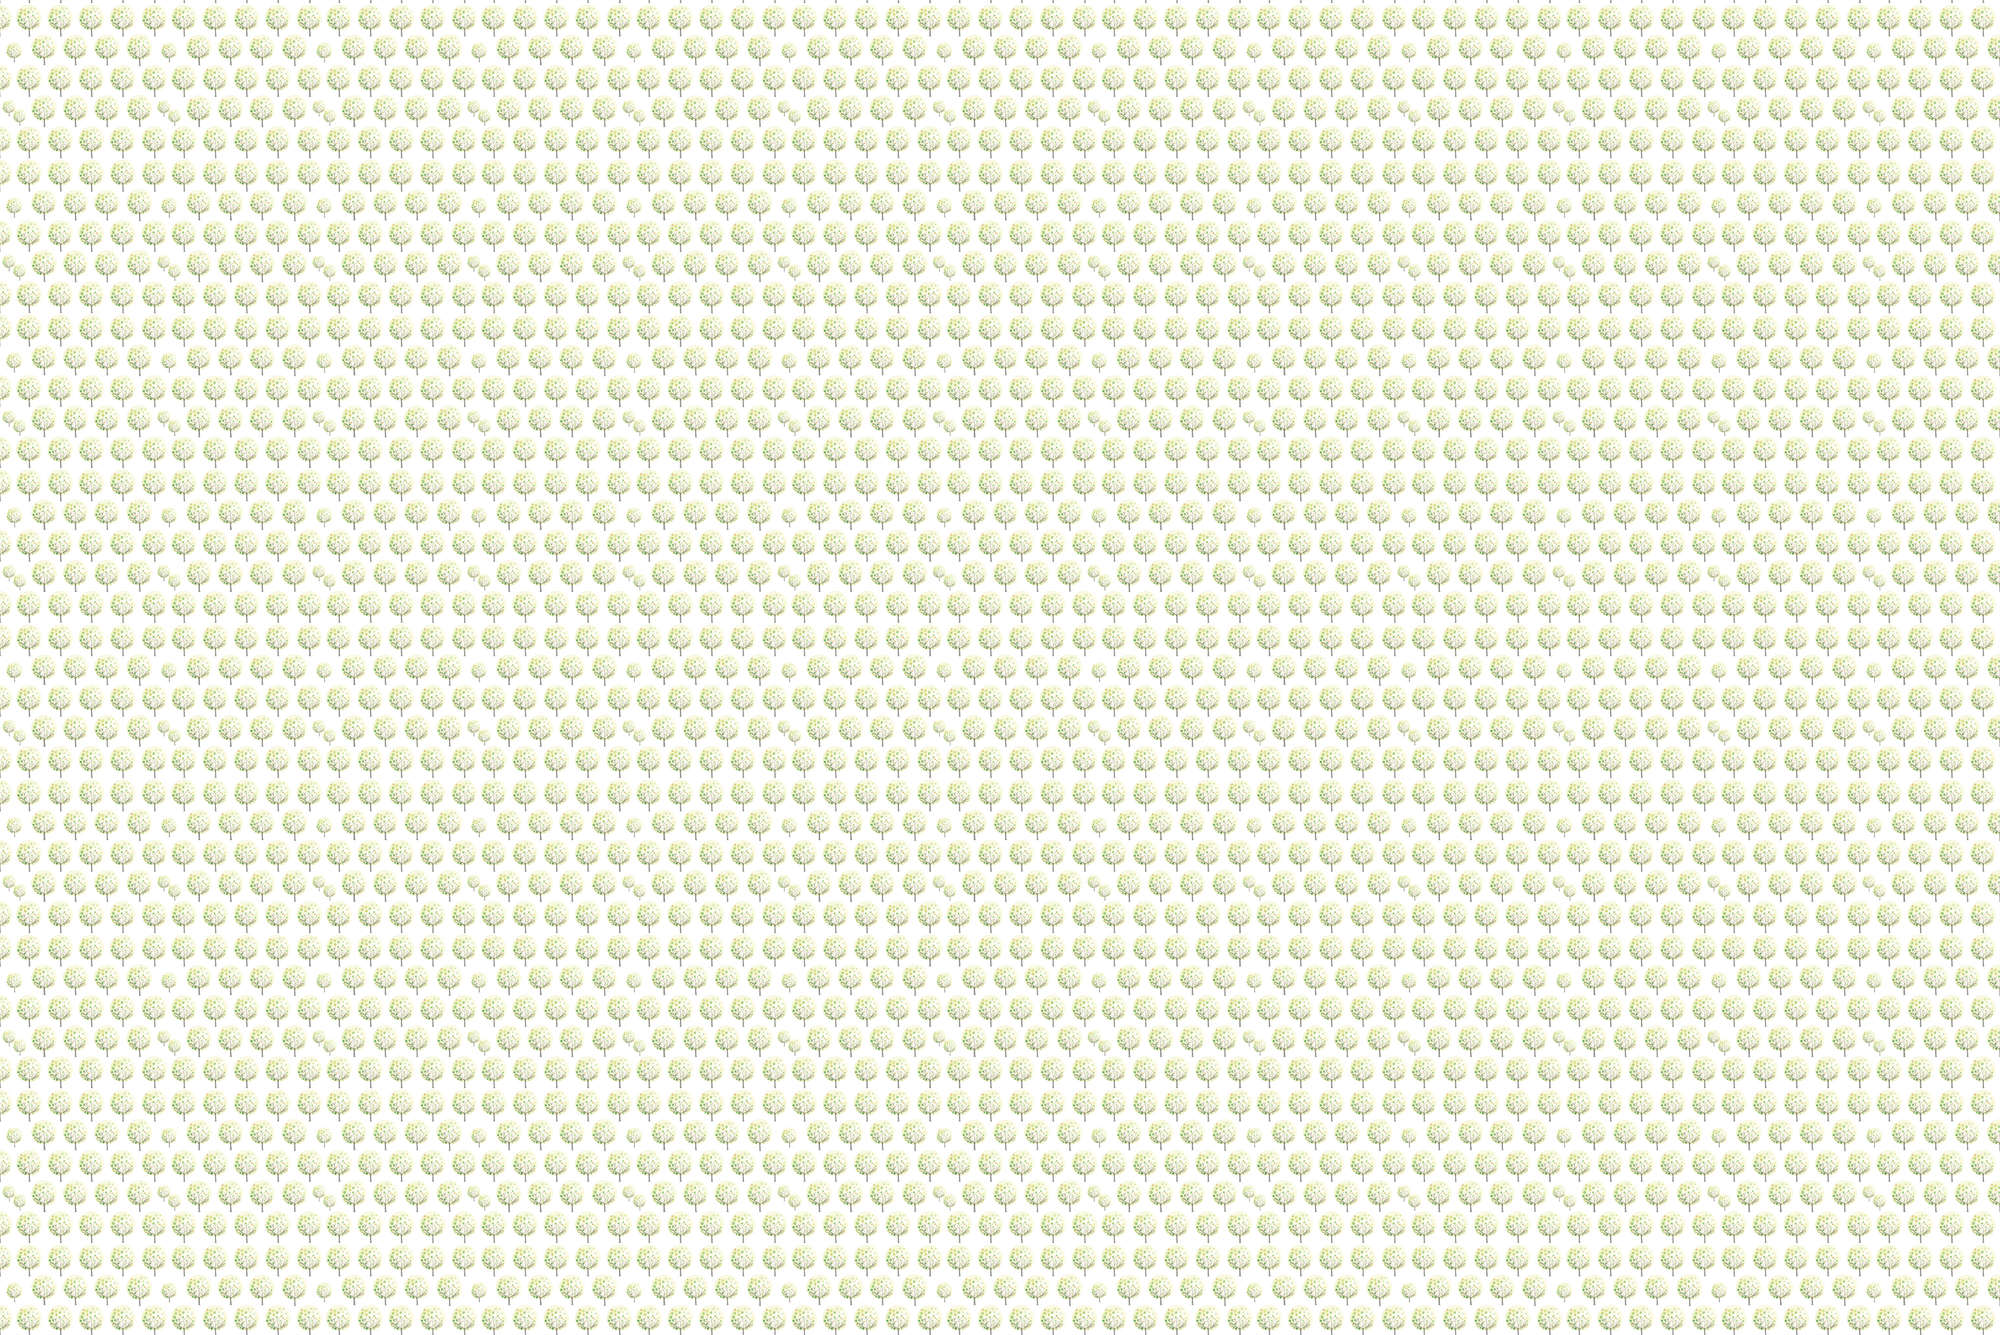             Design Fototapete Wald Muster in Grün auf weißem Hintergrund auf Matt Glattvlies
        